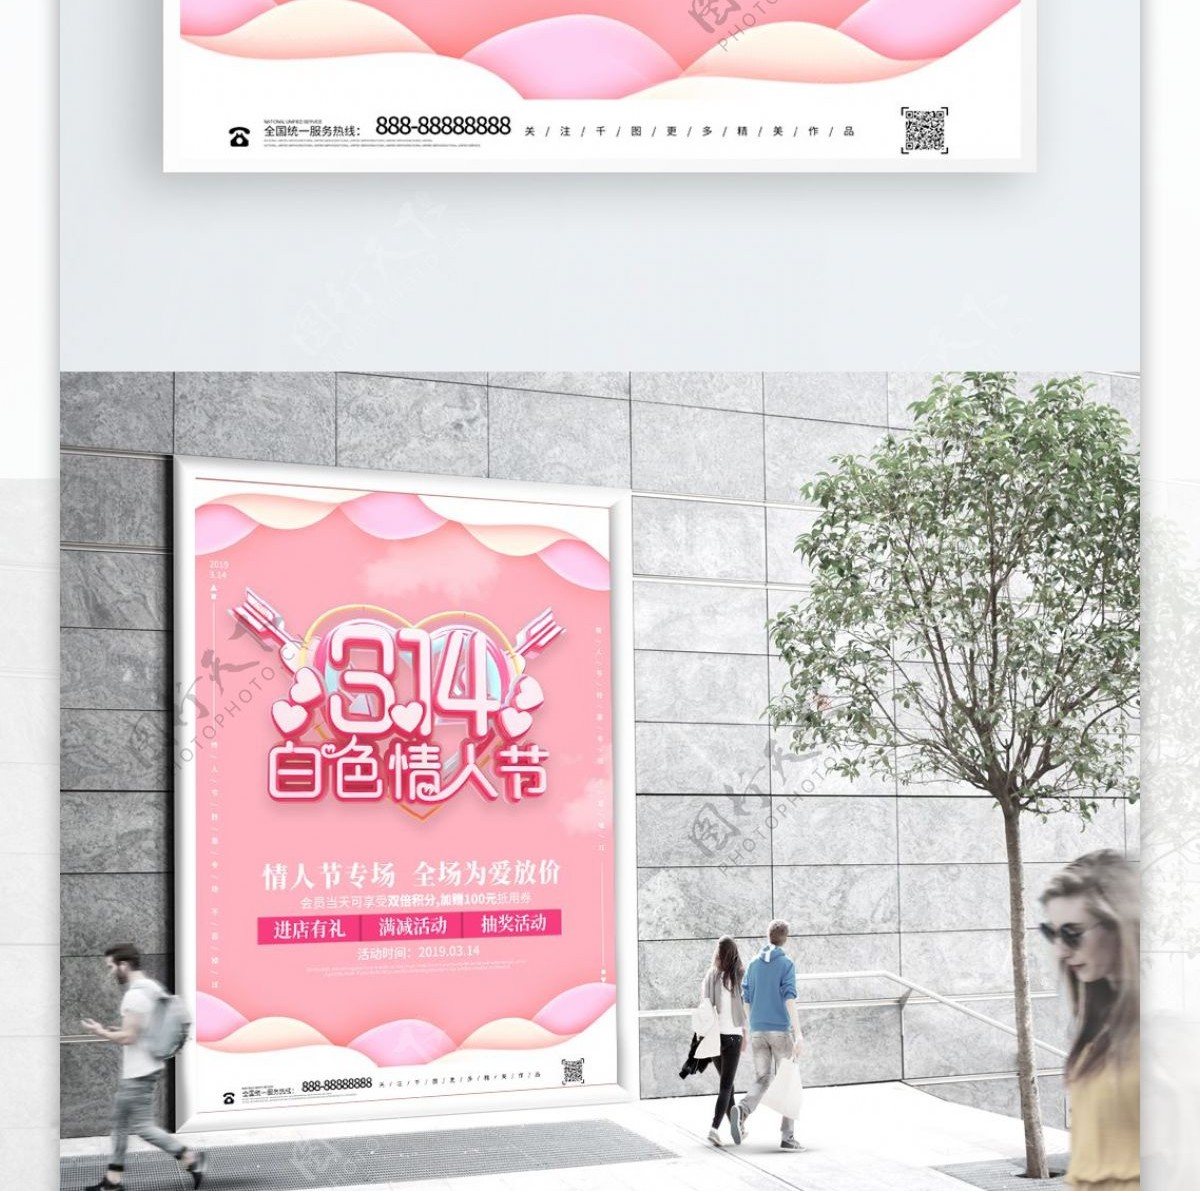 创意粉色314白色情人节促销海报